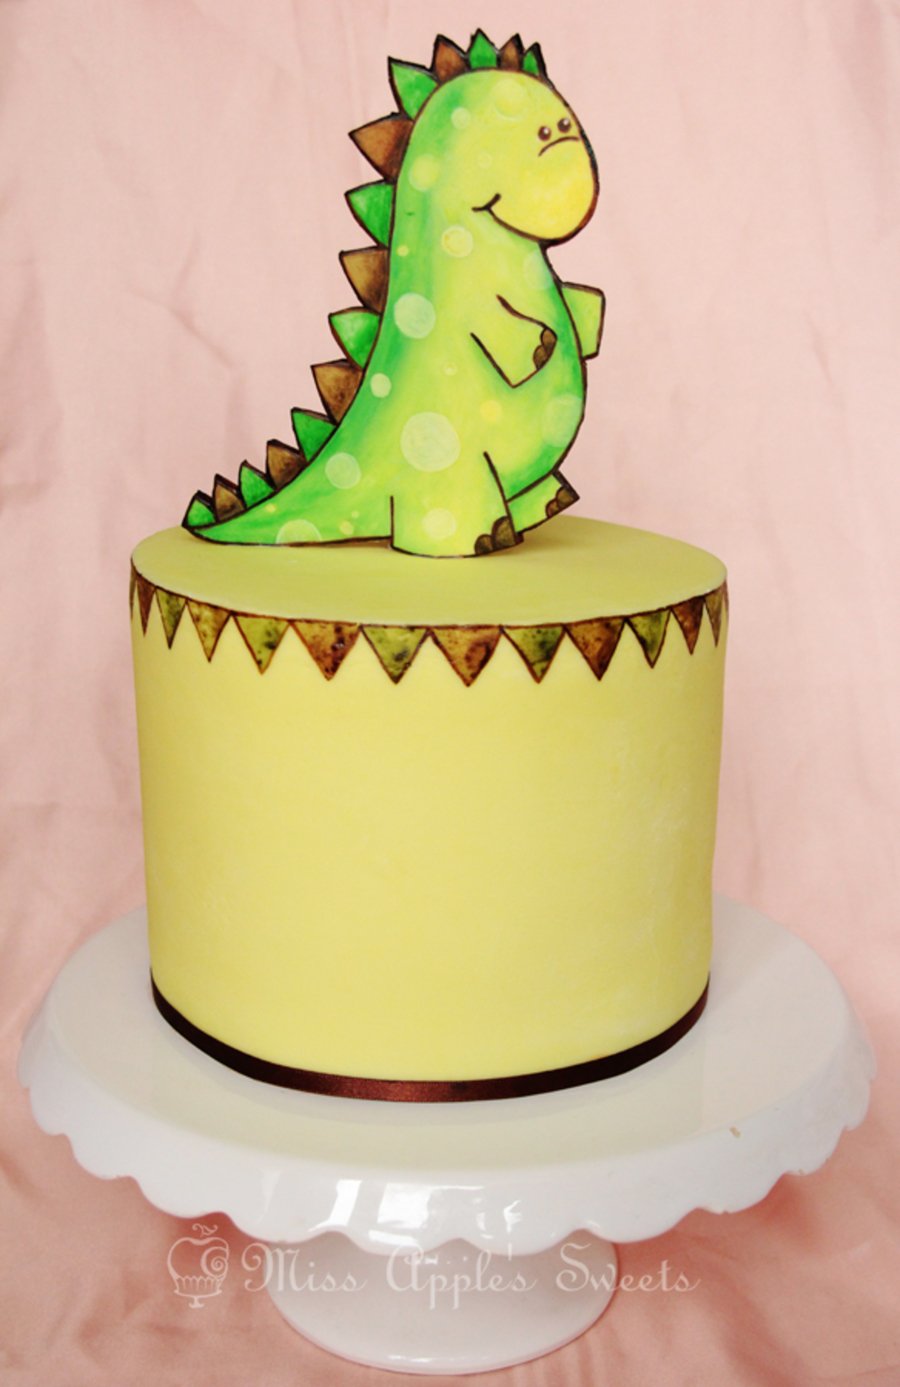 Небольшой торт с динозавром